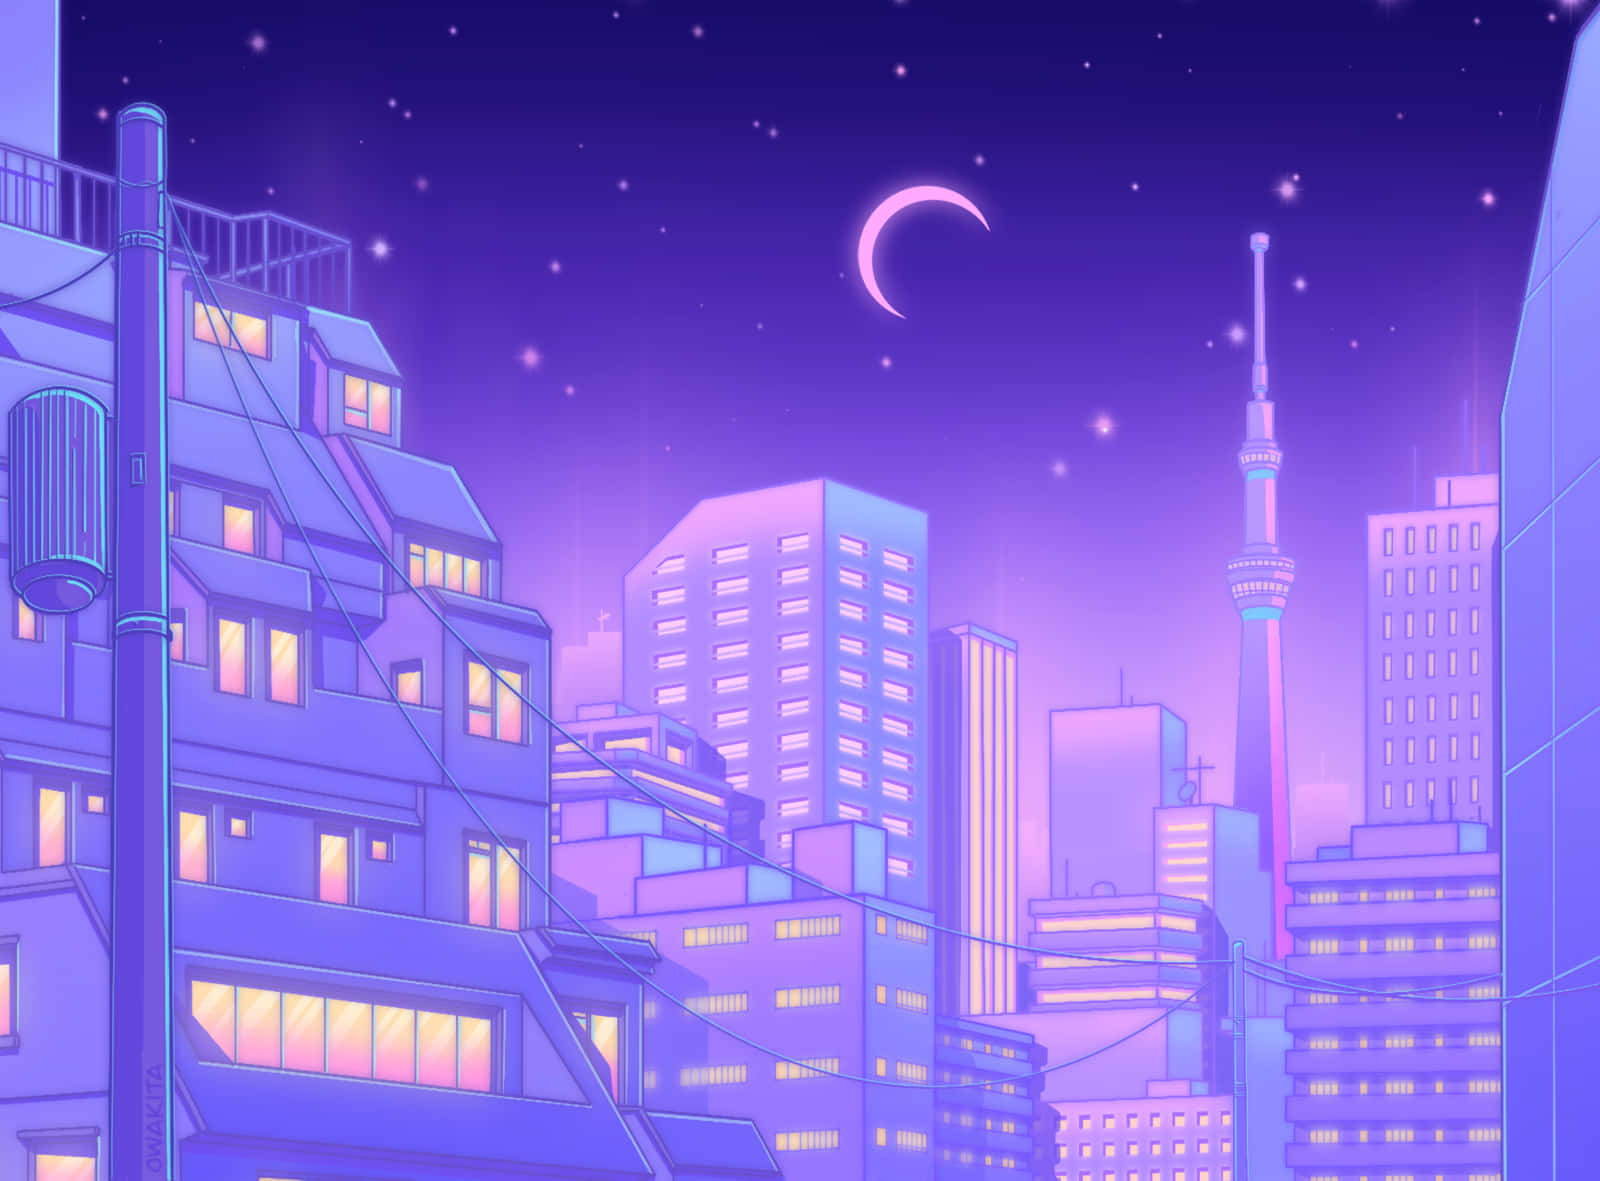 Papelde Parede Roxo De Noite Na Cidade De Tóquio Em Estilo Anime. Papel de Parede